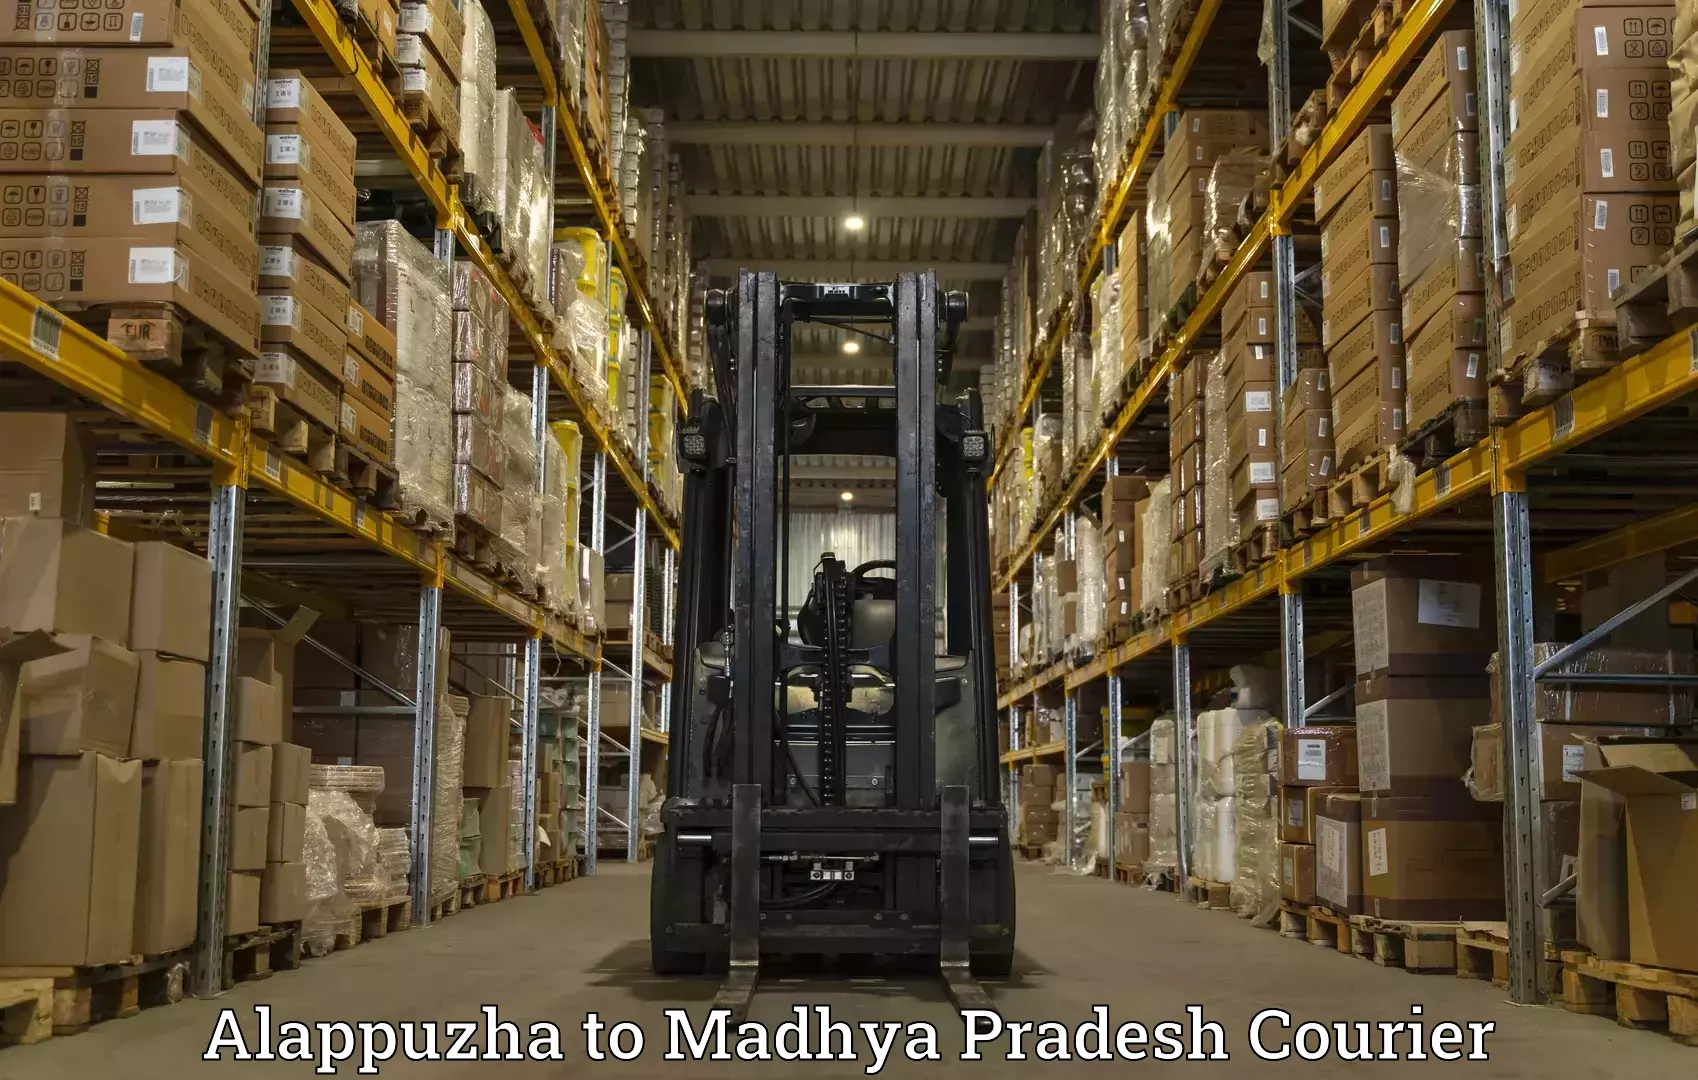 Efficient parcel service Alappuzha to Datia